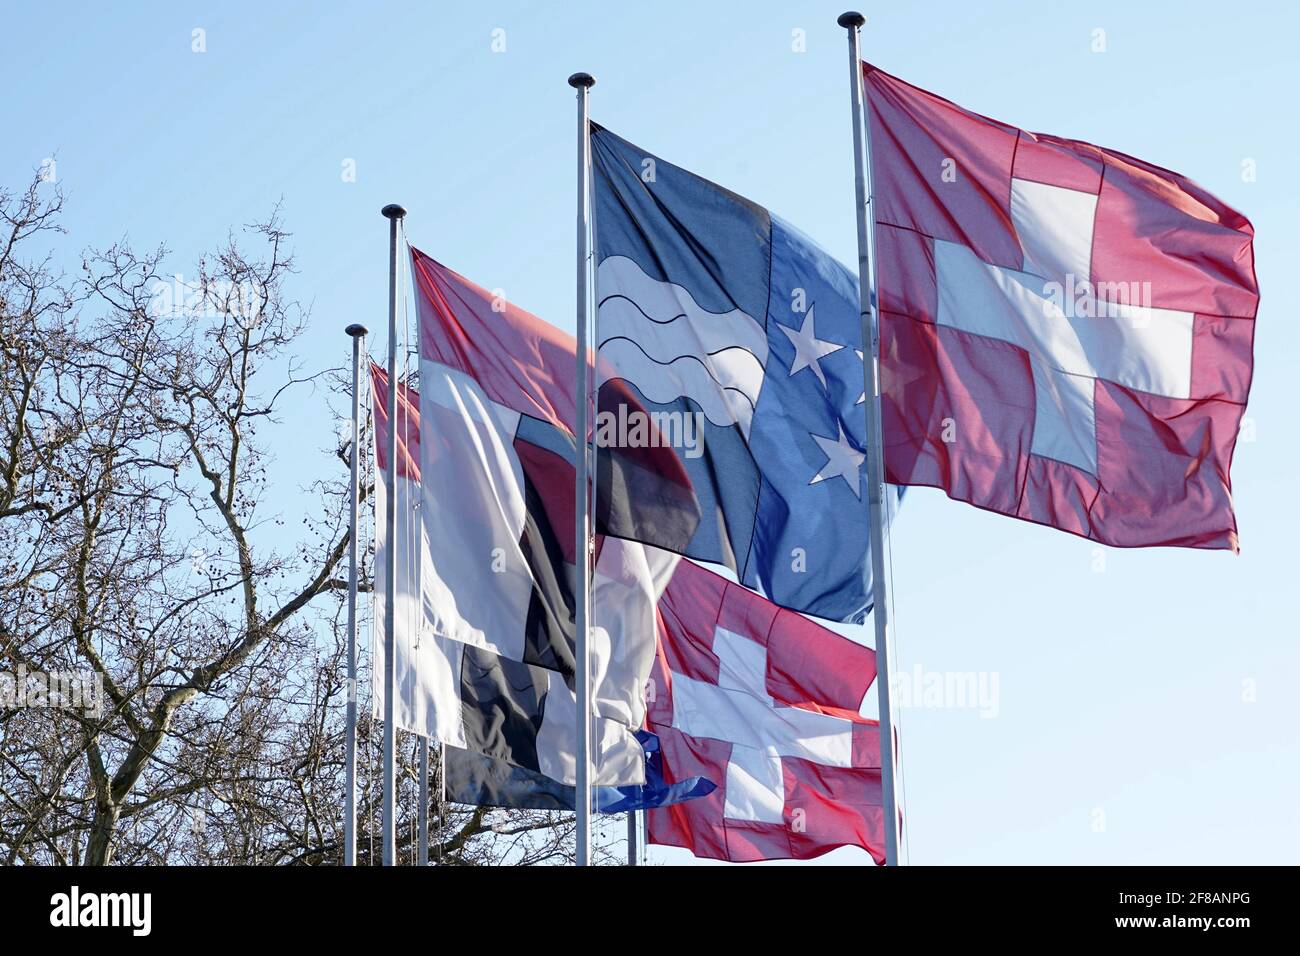 Drapeau fédéral suisse, drapeau cantonal du canton d'Argau et drapeau municipal de la ville de Baden. Ils agent dans le vent sur des poteaux métalliques sur l'arrière-plan. Banque D'Images